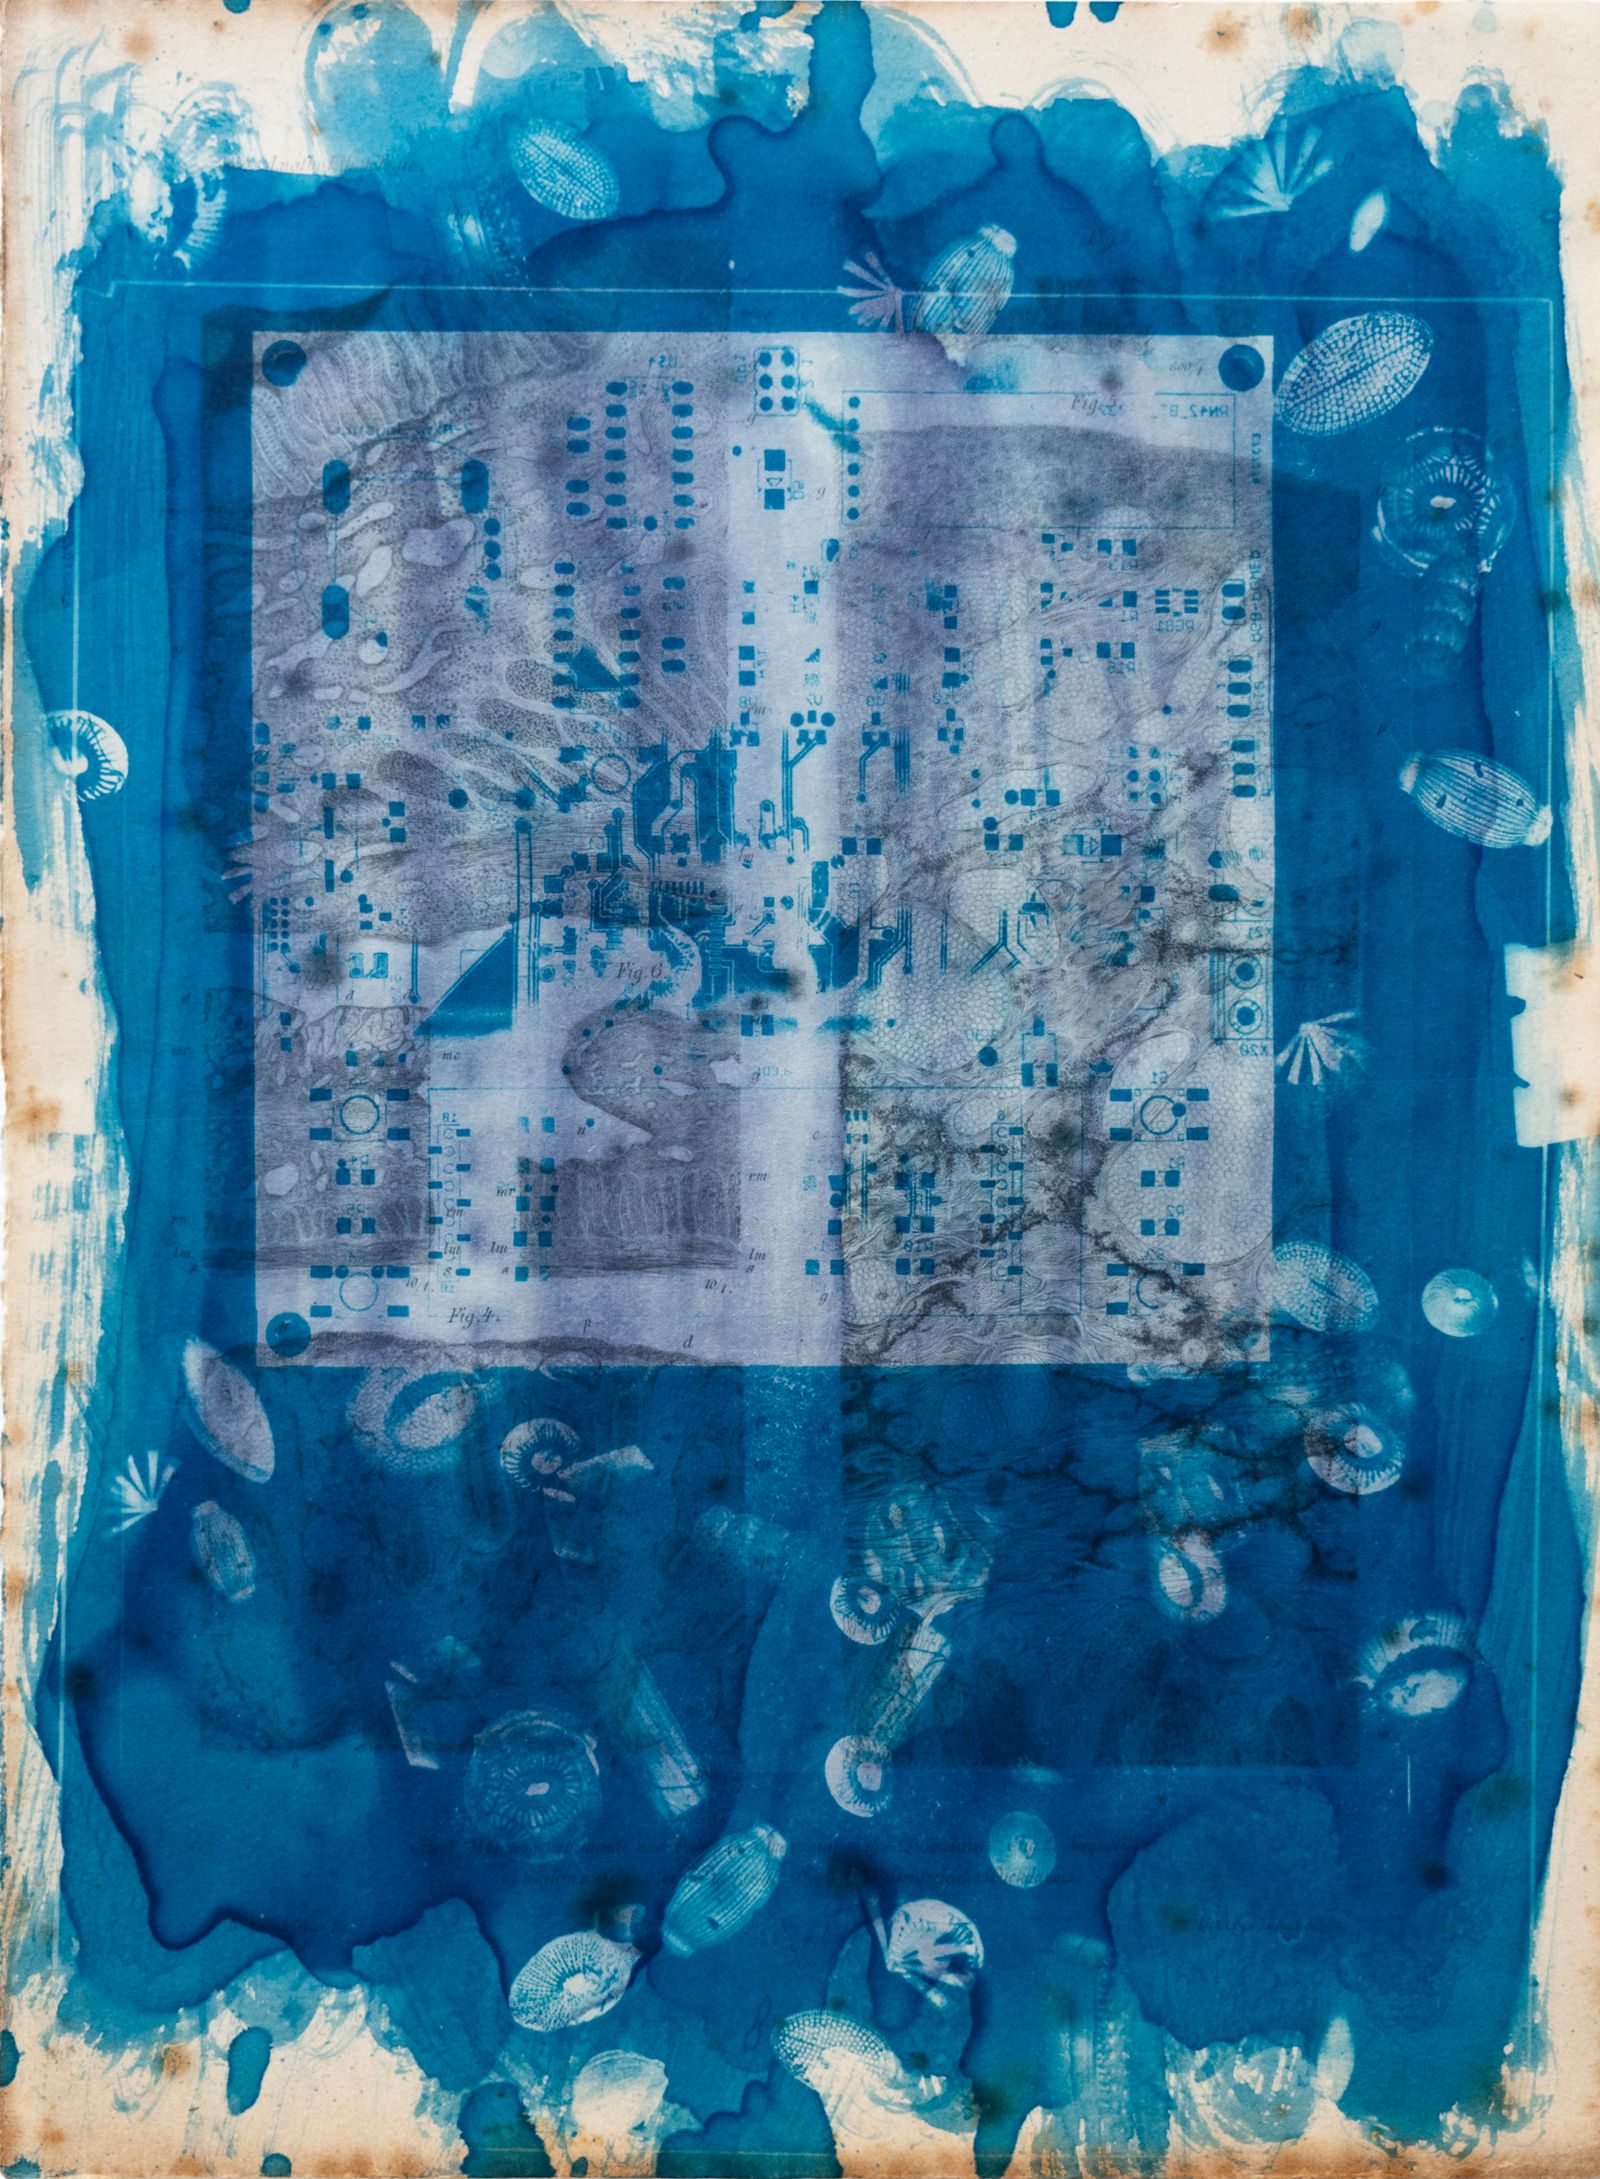 © Florence Iff - Amalgamated Fragmentation/ Technosphere 2 cyanotype on vintage lithography